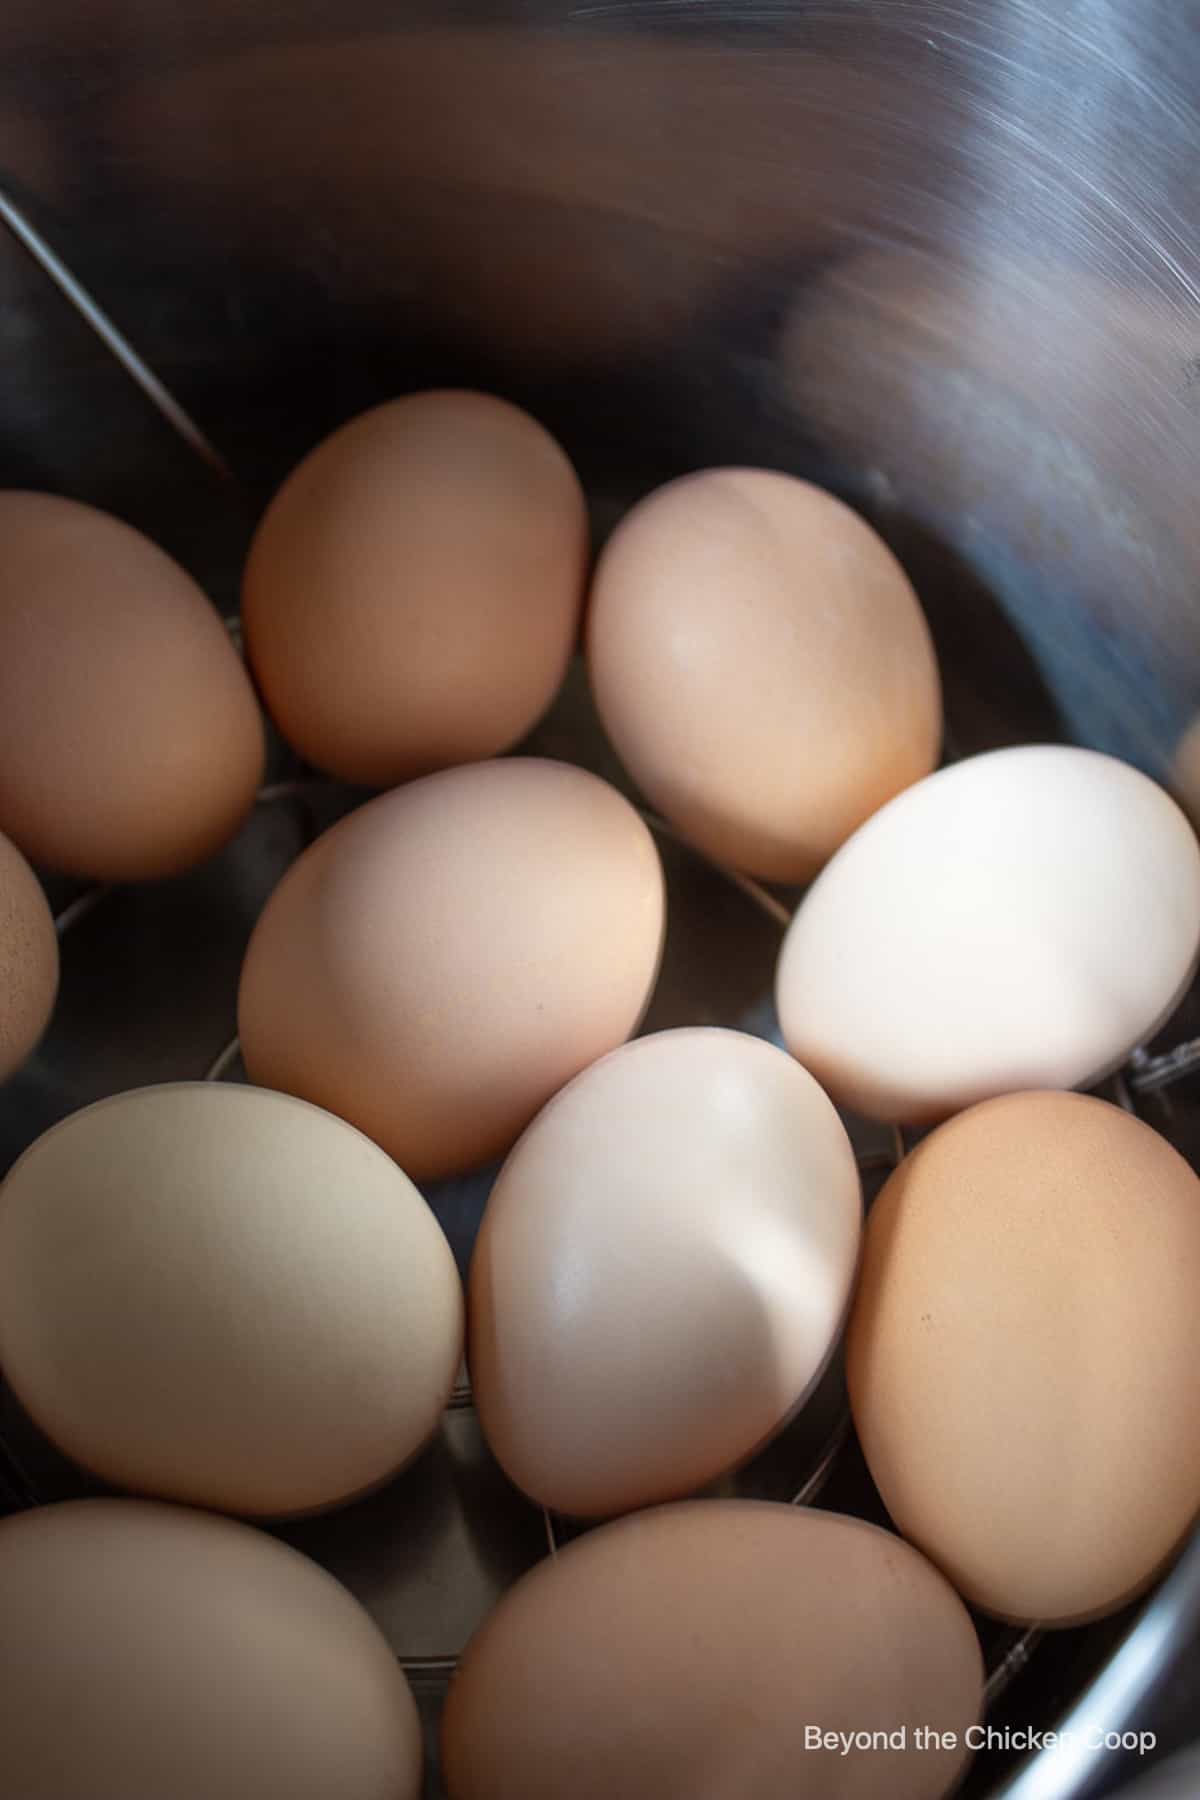 An assortment of eggs in a pot.